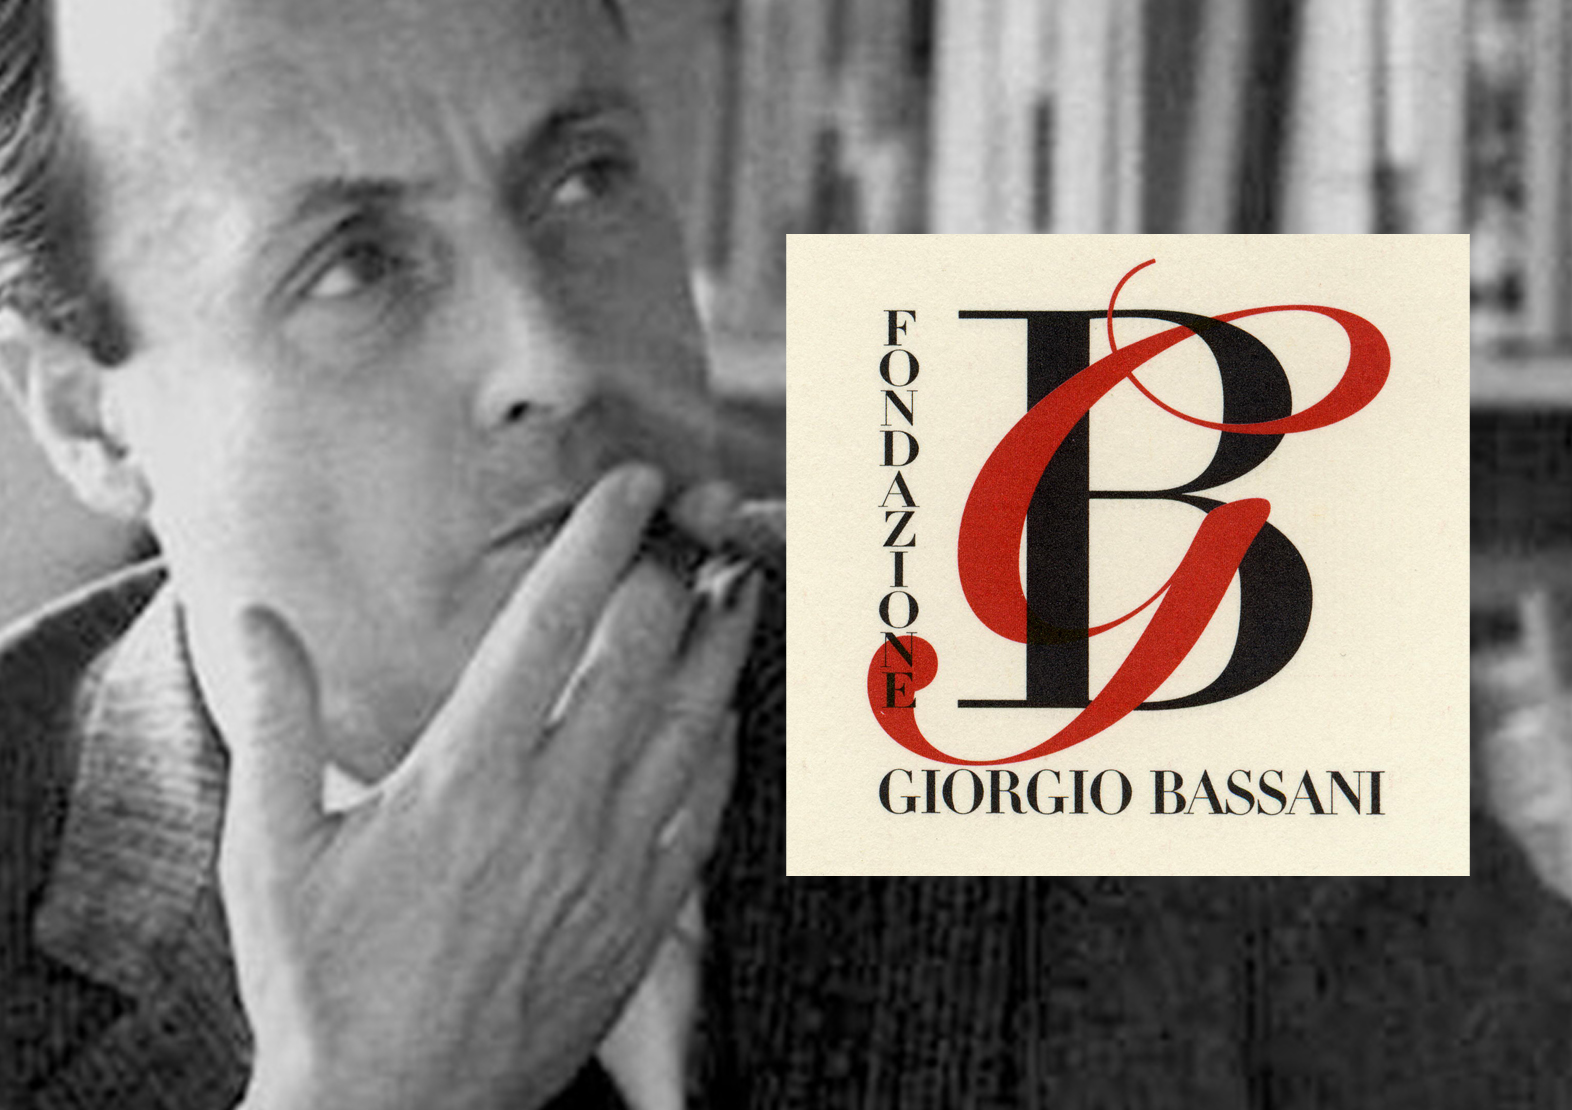 Featured image for “Fondazione Giorgio Bassani”